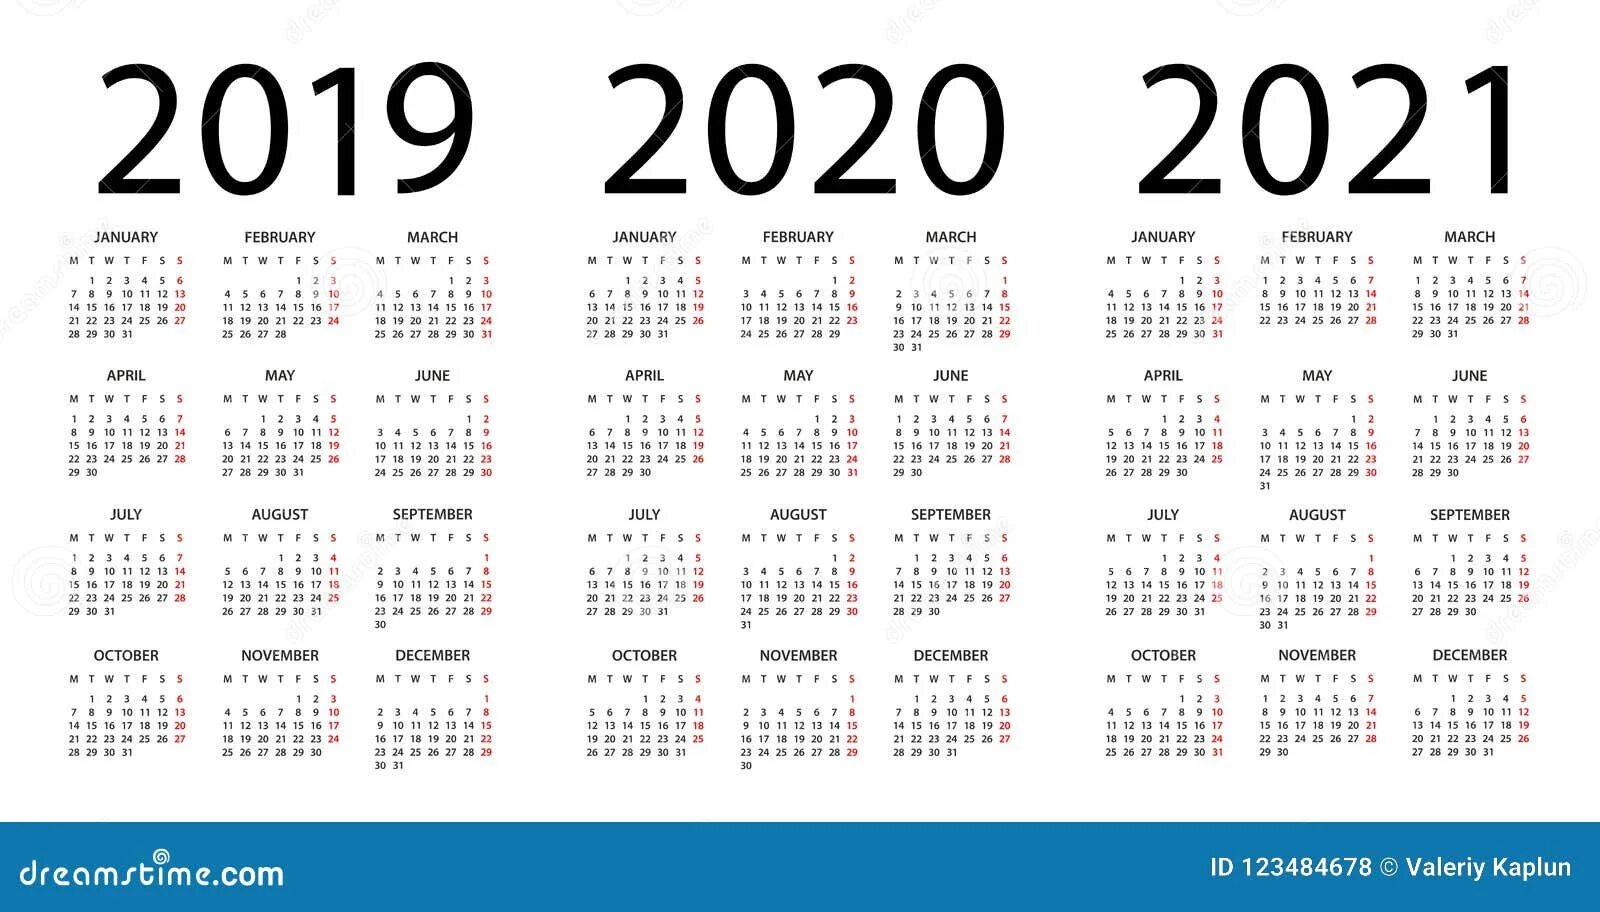 Календарь 2020 2021 год. Календарь 2019 2020 2021. Календарь 2019 2020 2021 года. Календарь 2019-2020. Календарь 2019-2021 год.